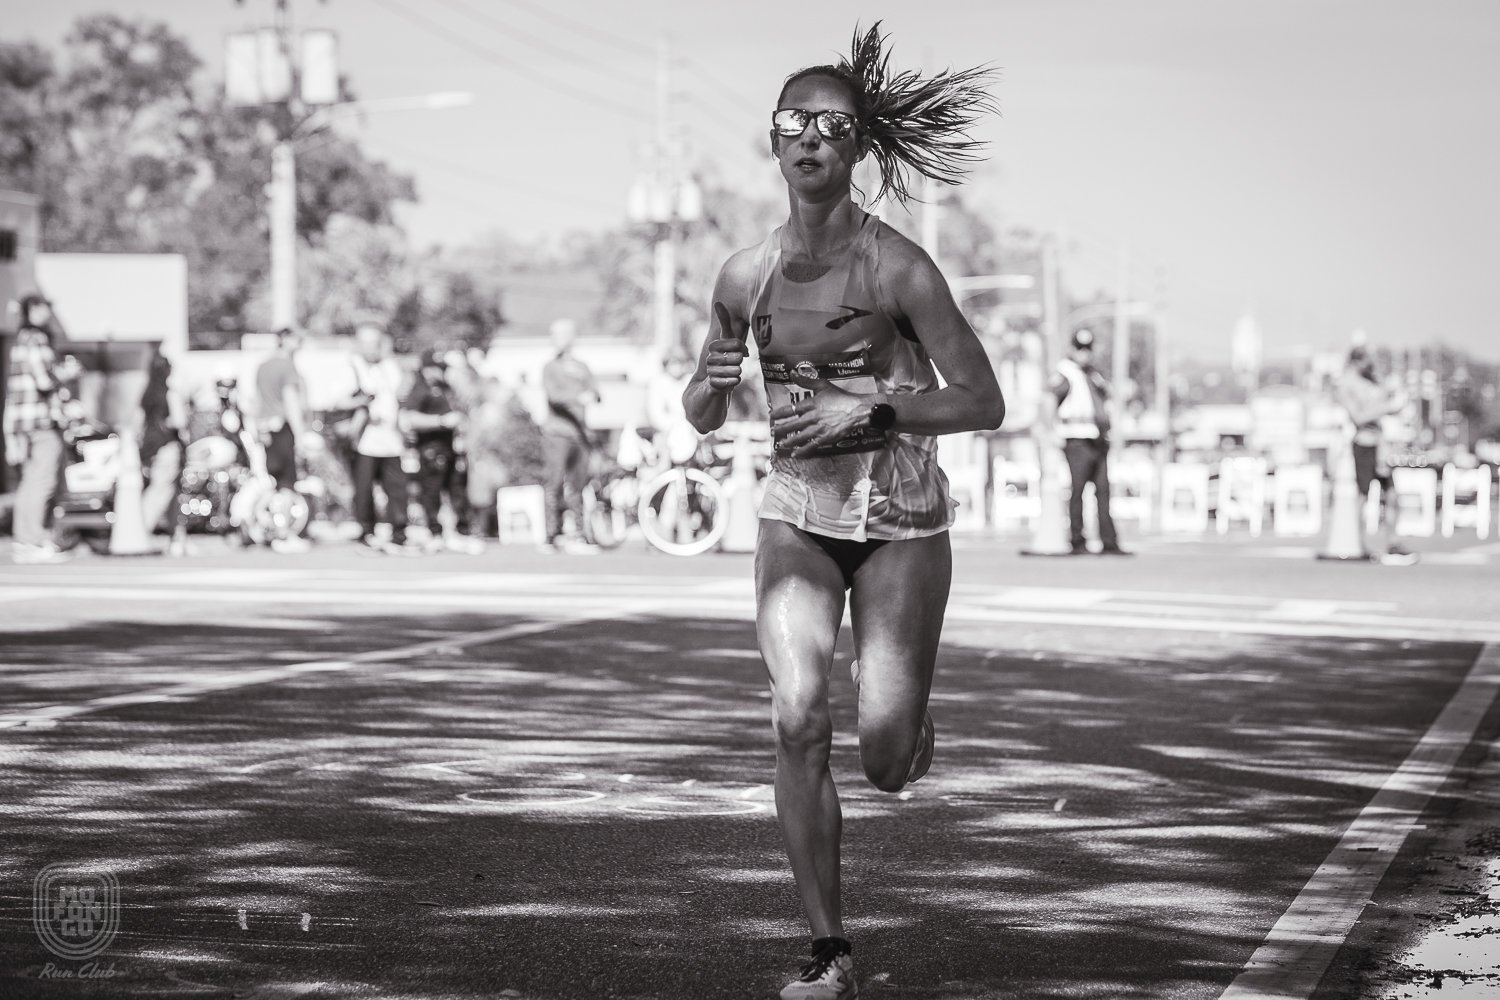  34. Anne-Marie Blaney (02:30:43), mejorando su marca personal en su segunda clasificatoria para maratón olímpico. 